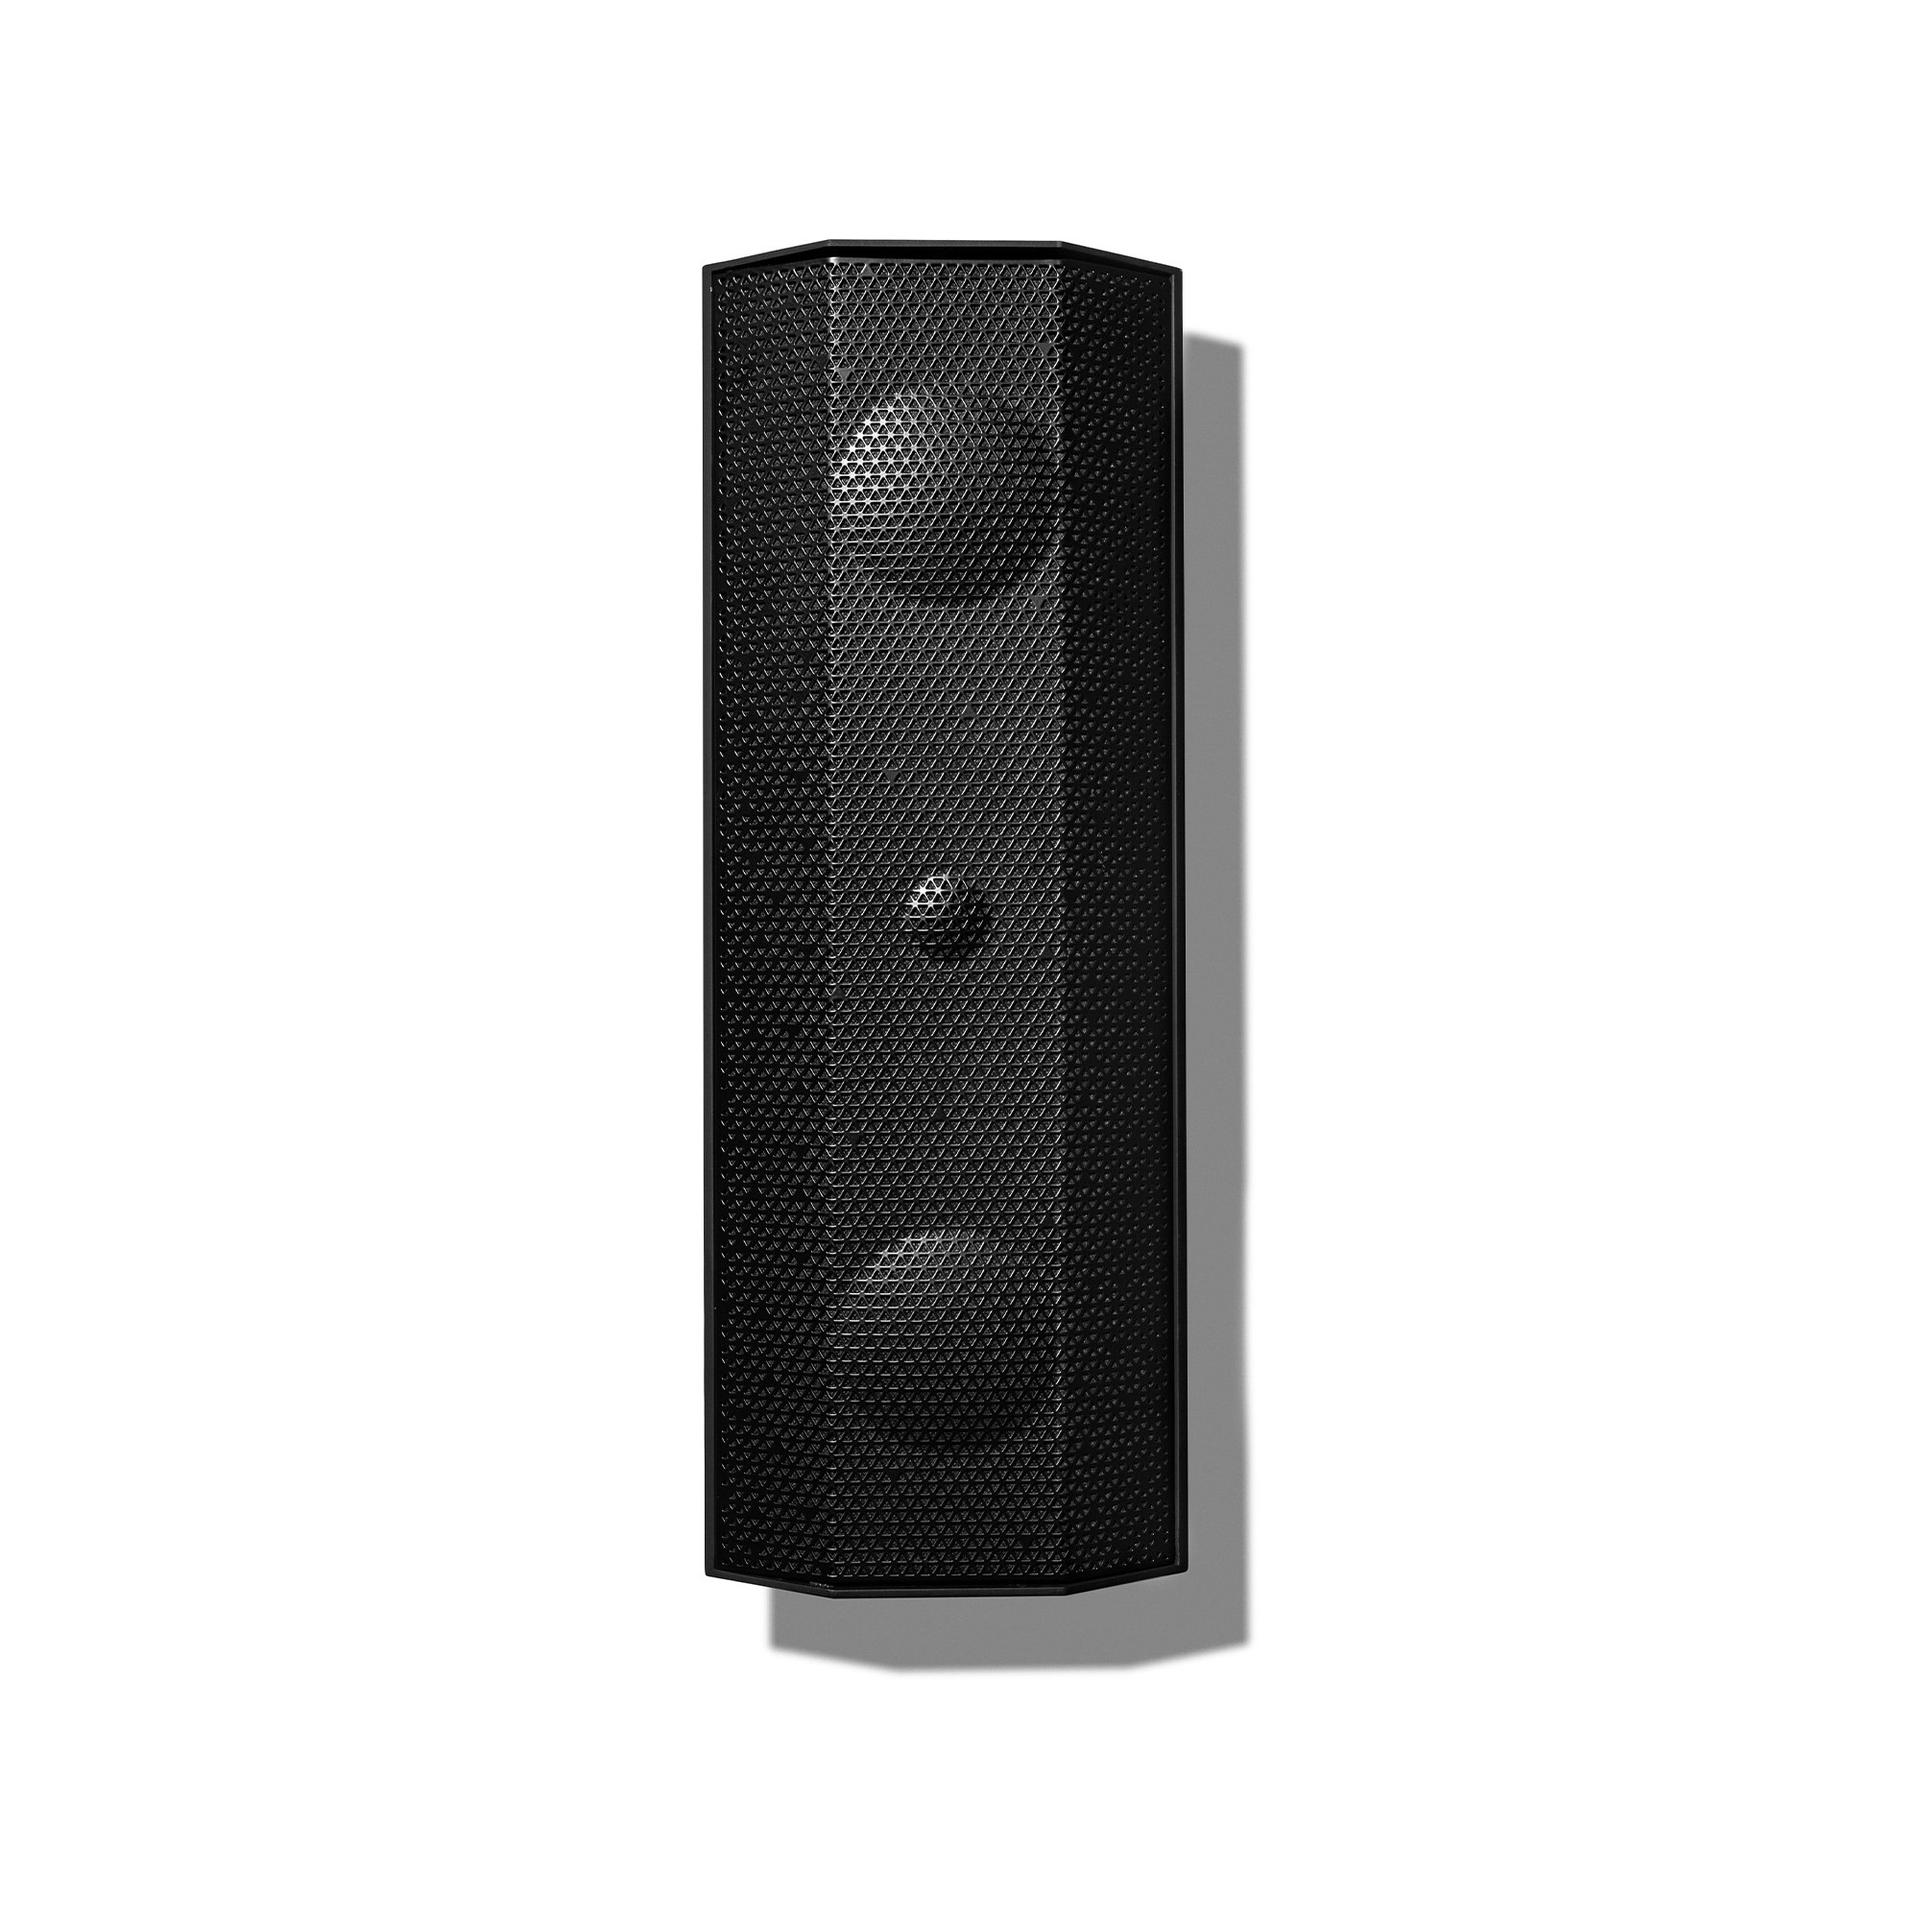 Lithe Audio iO1 Indoor & Outdoor WiFi Speaker in Black